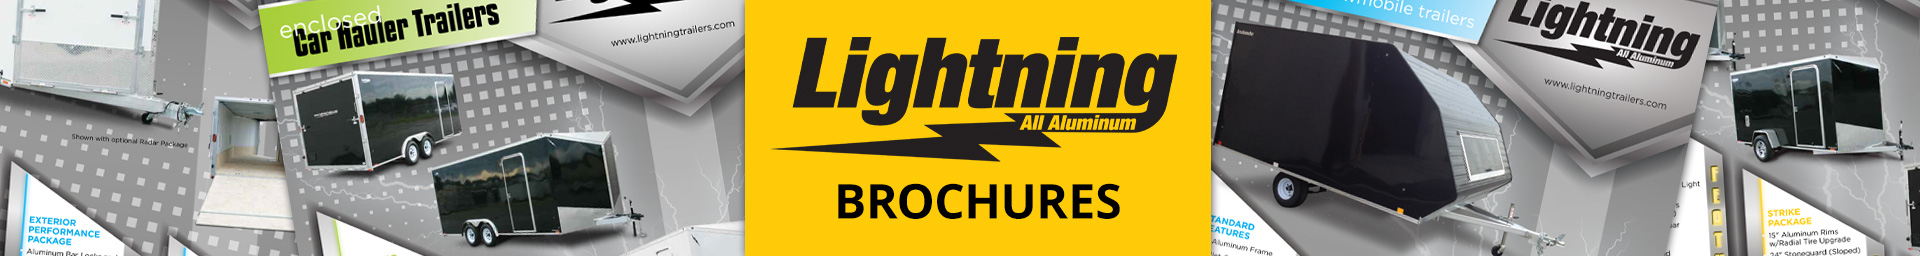 Lightning Brochures